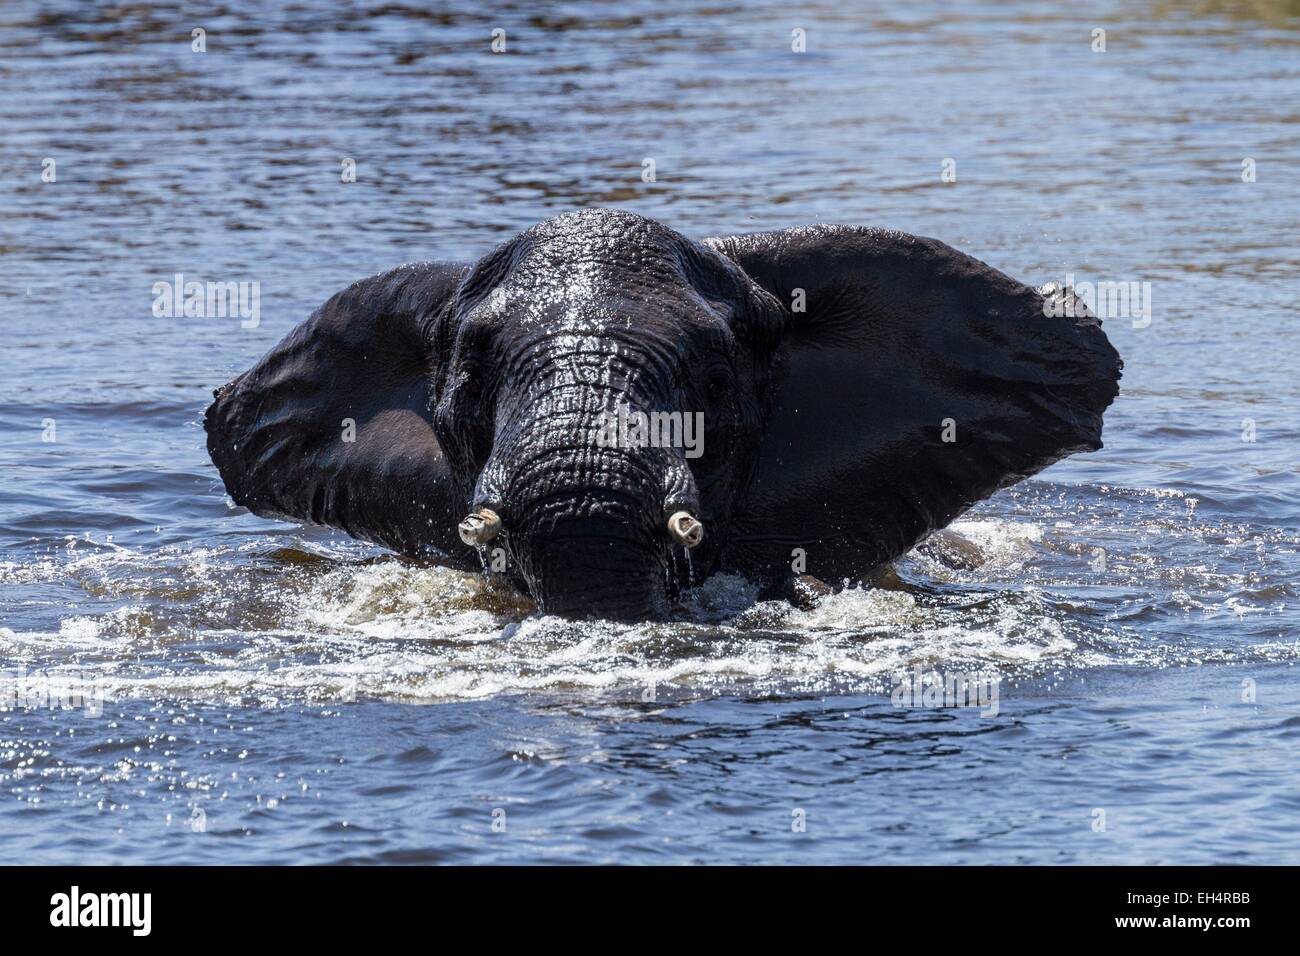 Le Botswana, le parc national de Chobe, Savuti elephant (Loxodonta africana du secteur privé), baignoire dans la rivière Savuti Banque D'Images